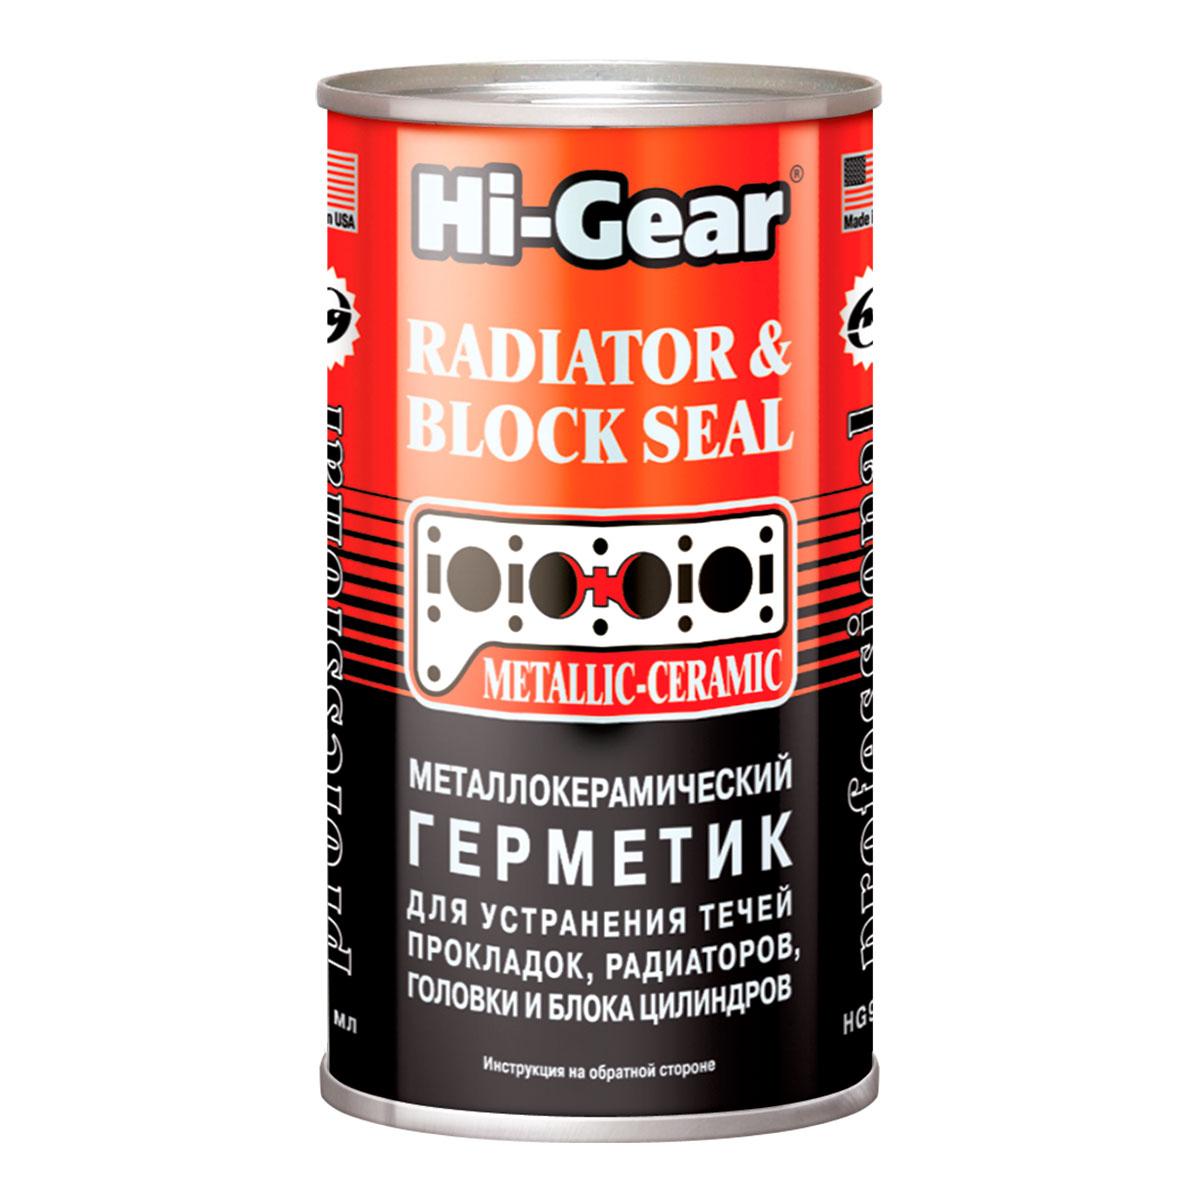 Металлокерамический герметик для устранение течи прокладок,радиаторов,головки и блока цилиндров Hi-Gear 325ml